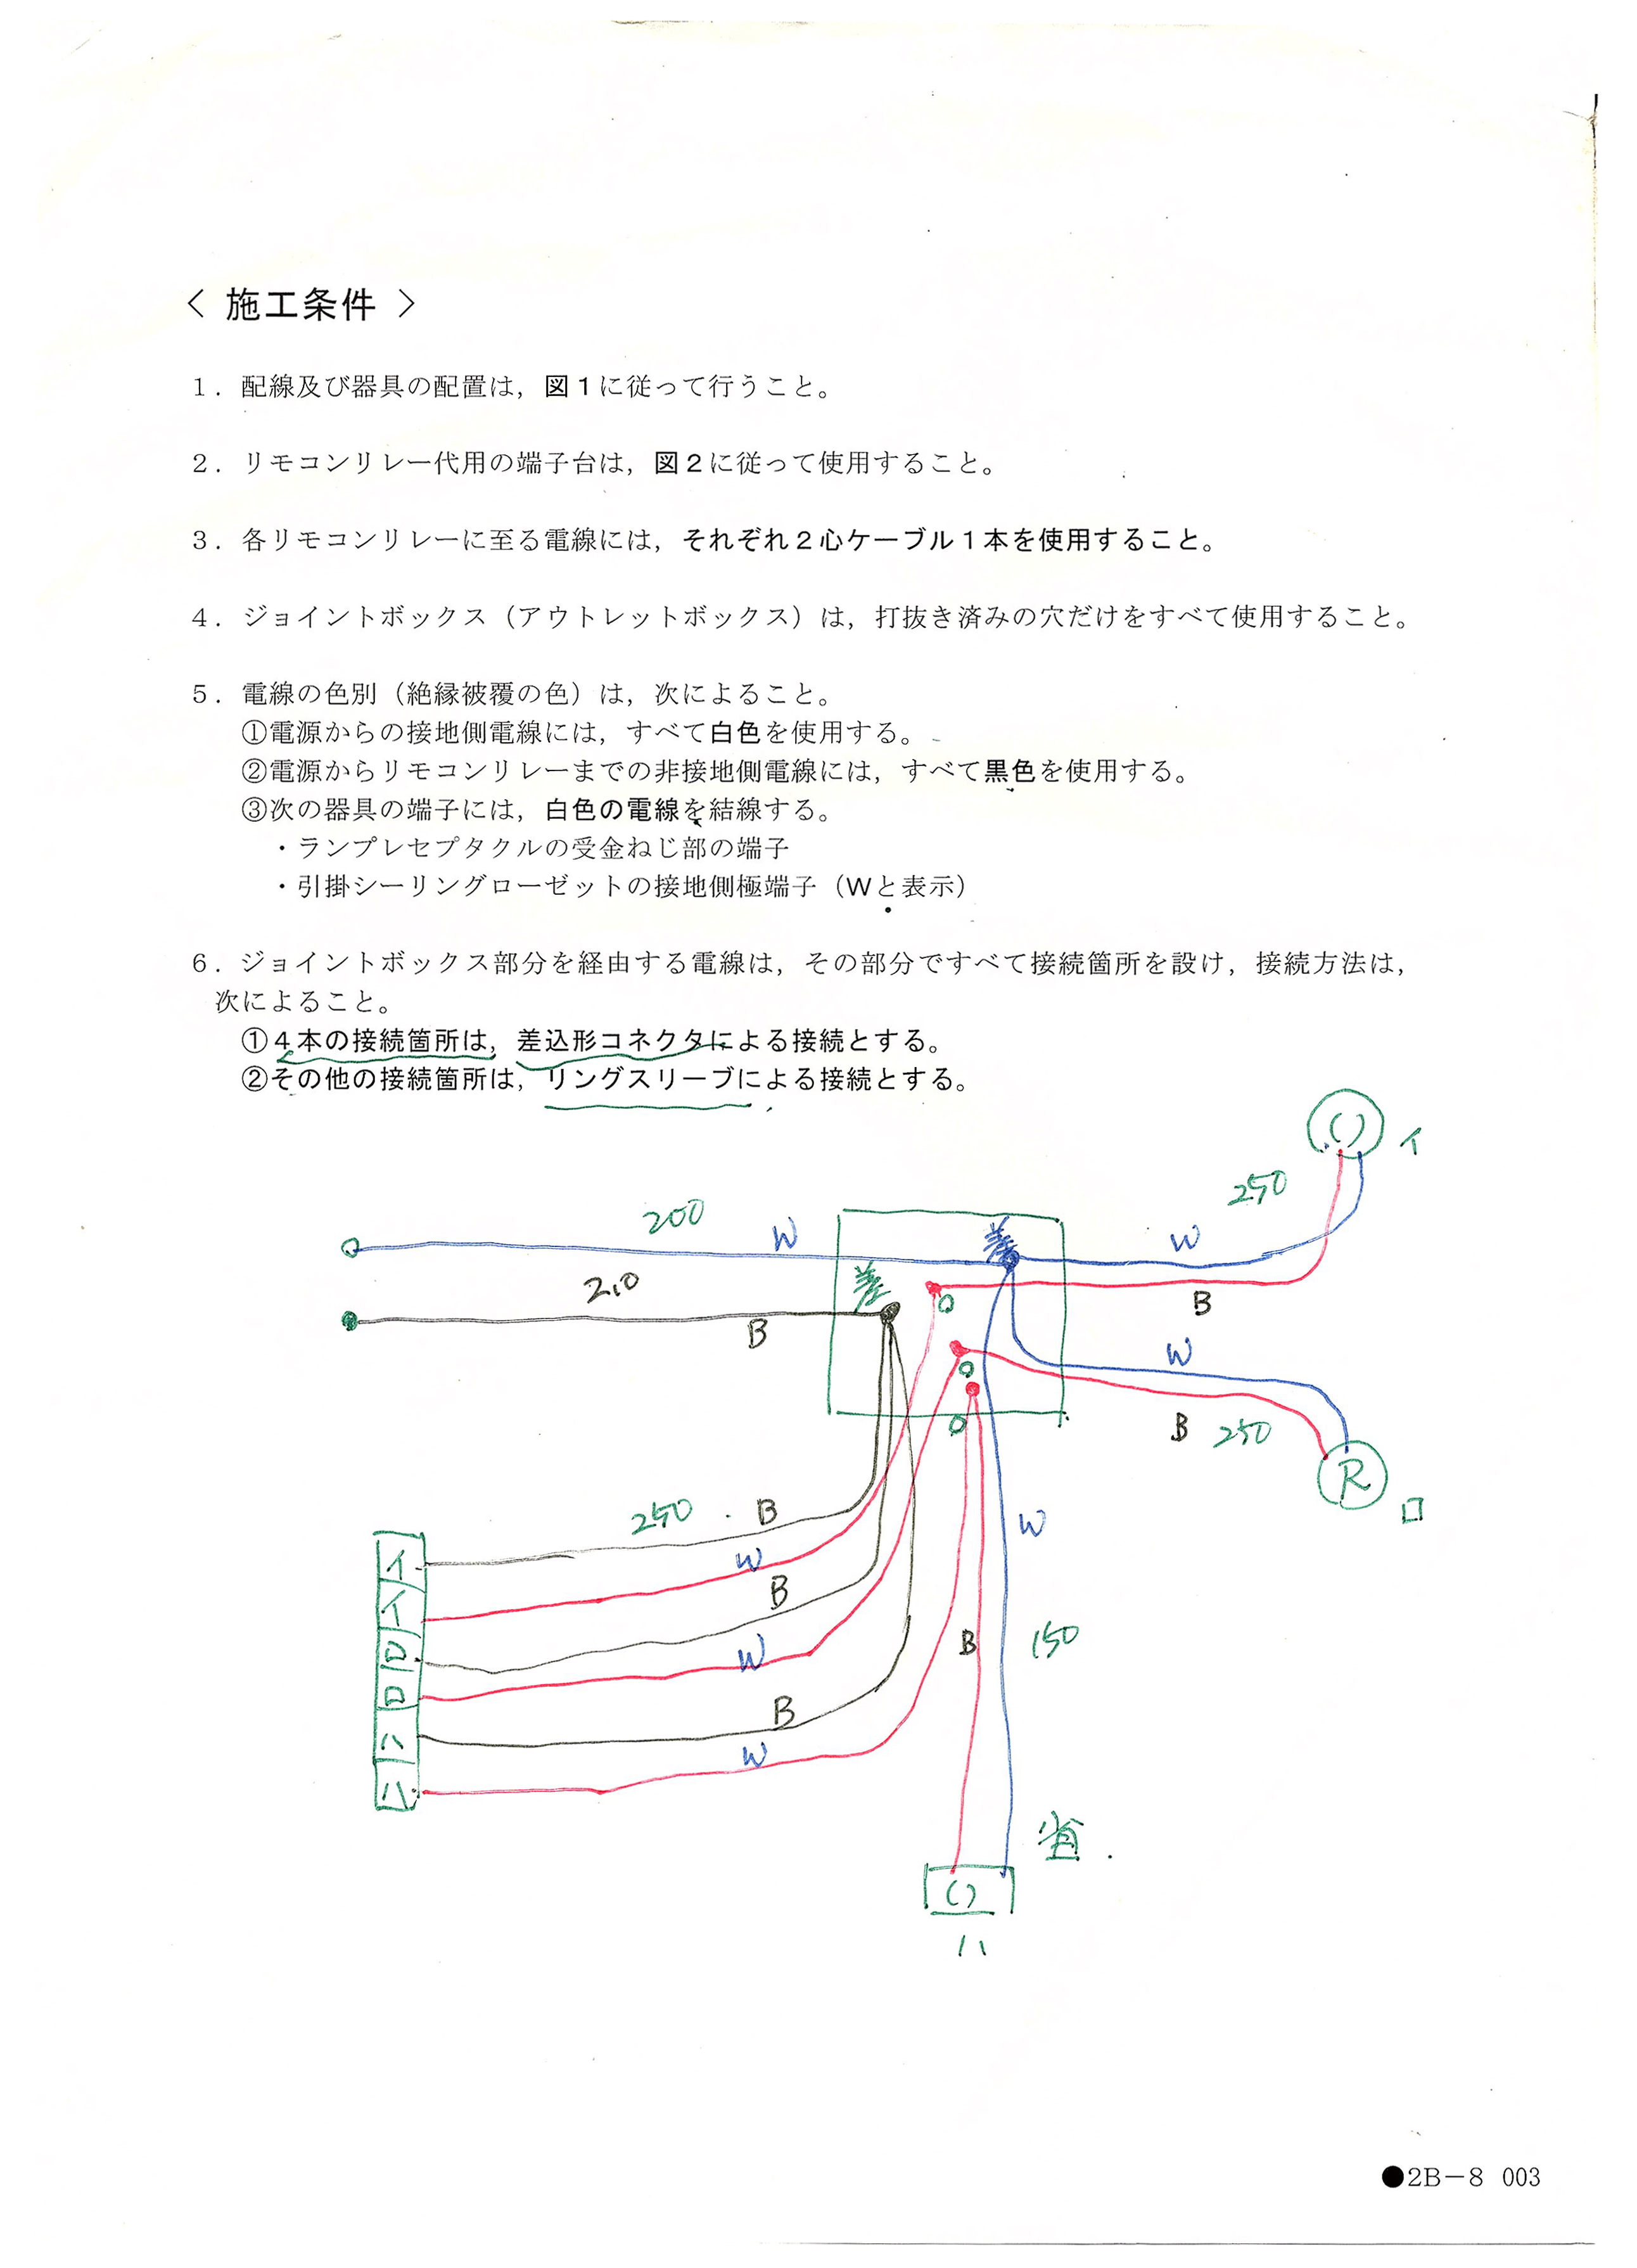 第二種電気工事士　技能試験の問題と自分の描いた複線図